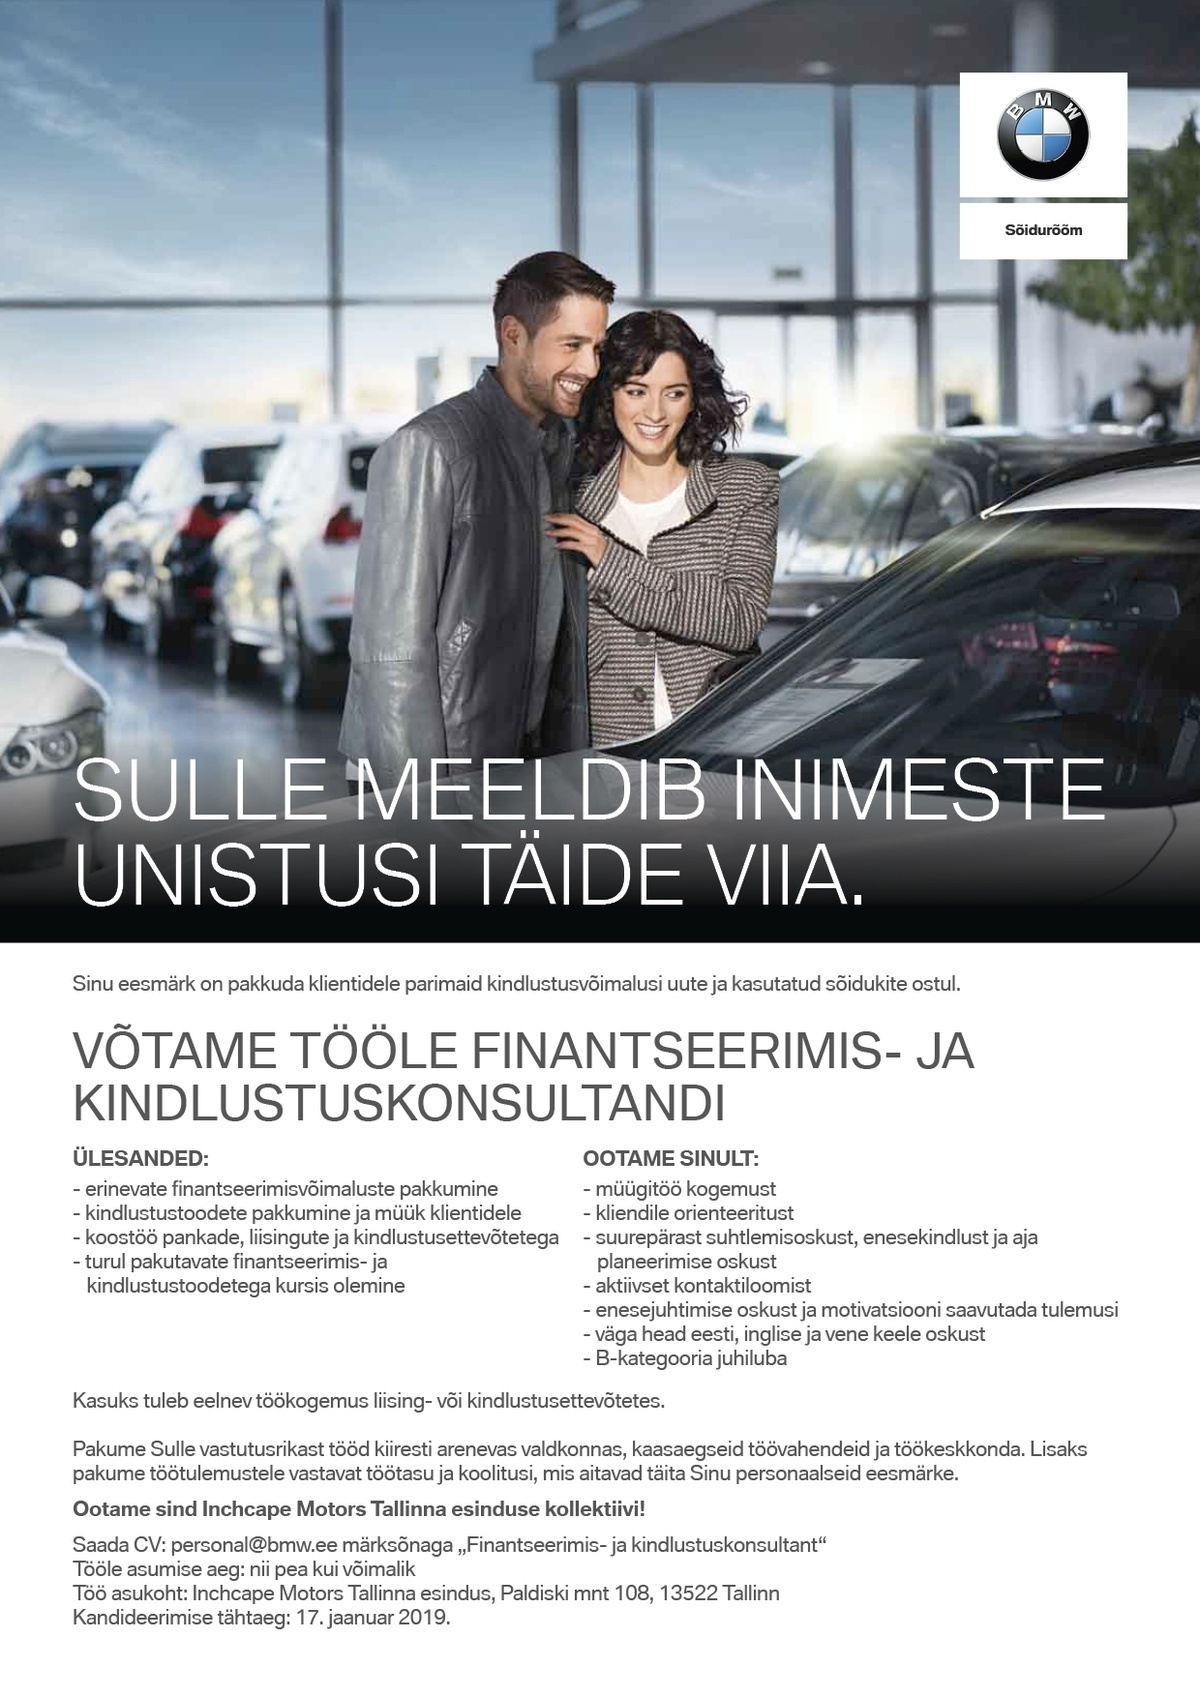 Inchcape Motors Tallinna BMW esindus Finantseerimis- ja kindlustuskonsultant